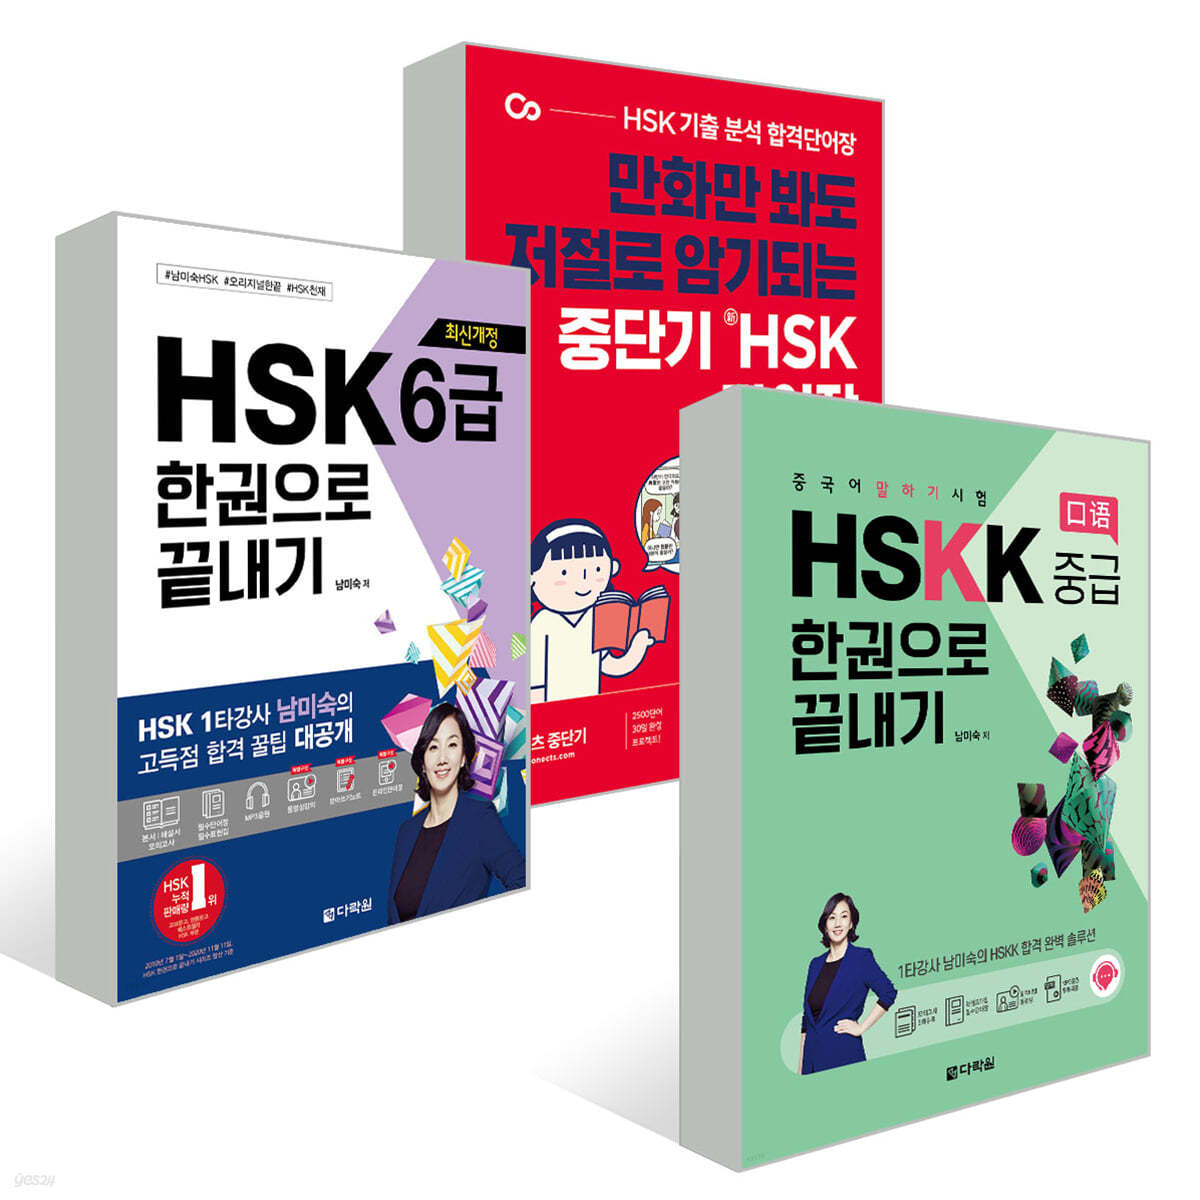 중단기 신 HSK 단어장 6급 + 최신개정 HSK 6급 한권으로 끝내기 + 중국어 말하기 시험 HSKK 중급 한권으로 끝내기